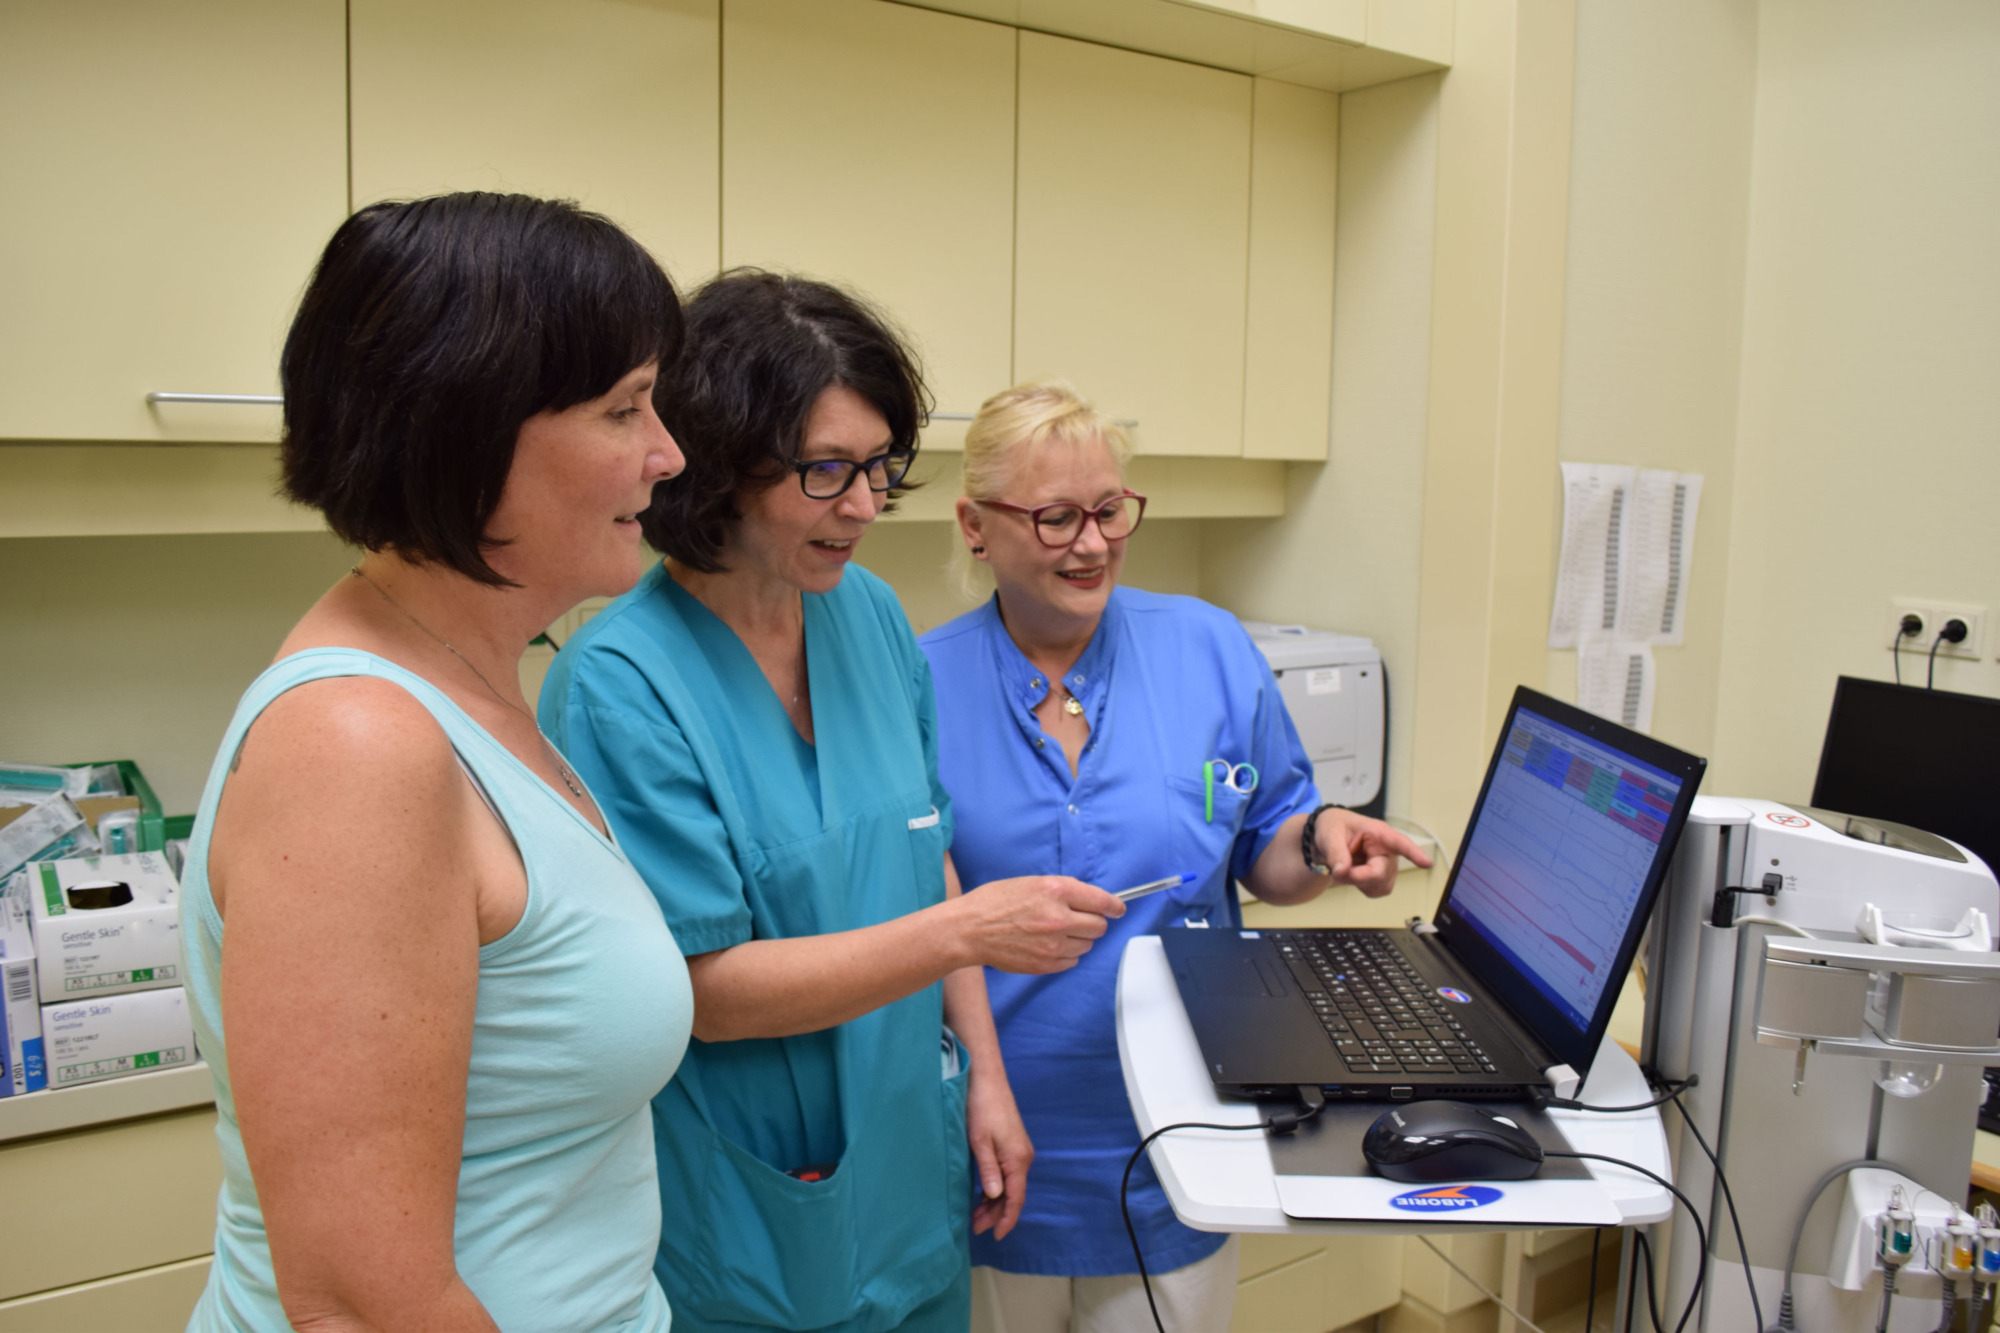 Patientin steht mit Ärztin und Pflegerin vor Computer, Patientin schaut mit Ärztin und Pflegerin auf Bildschirm, Ärztin zeigt auf Bildschirm